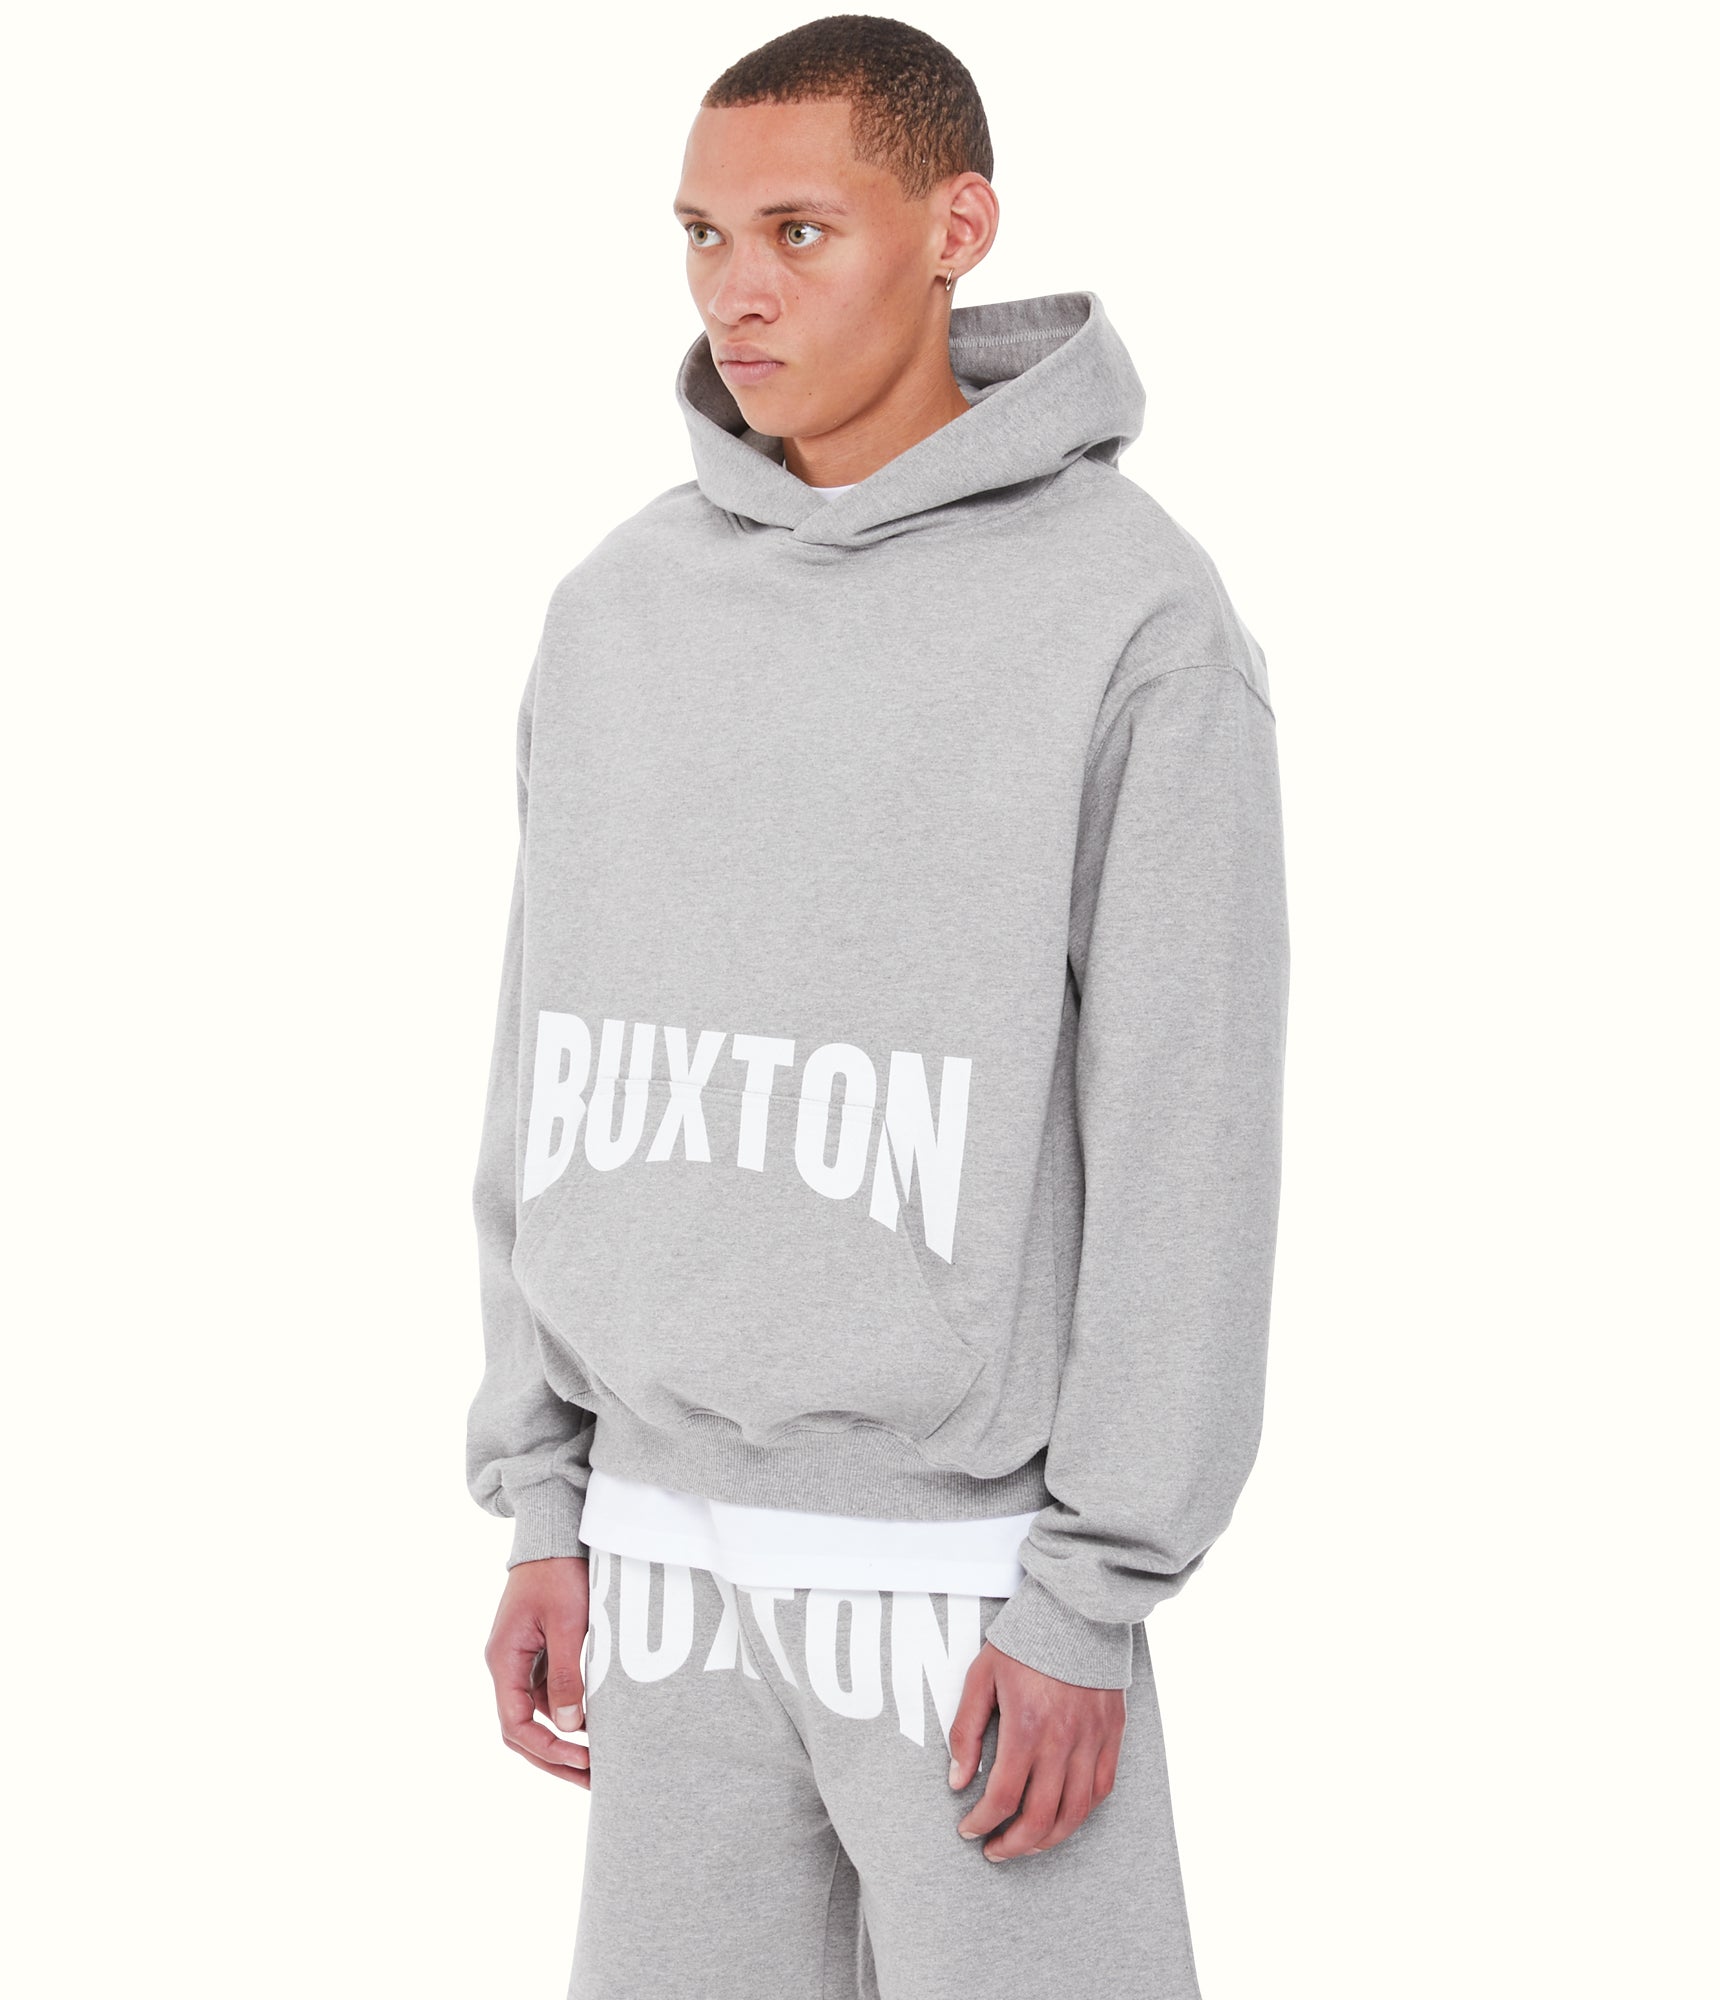 Cole buxton コールバクストン フランネル オーバーシャツ - ブルゾン